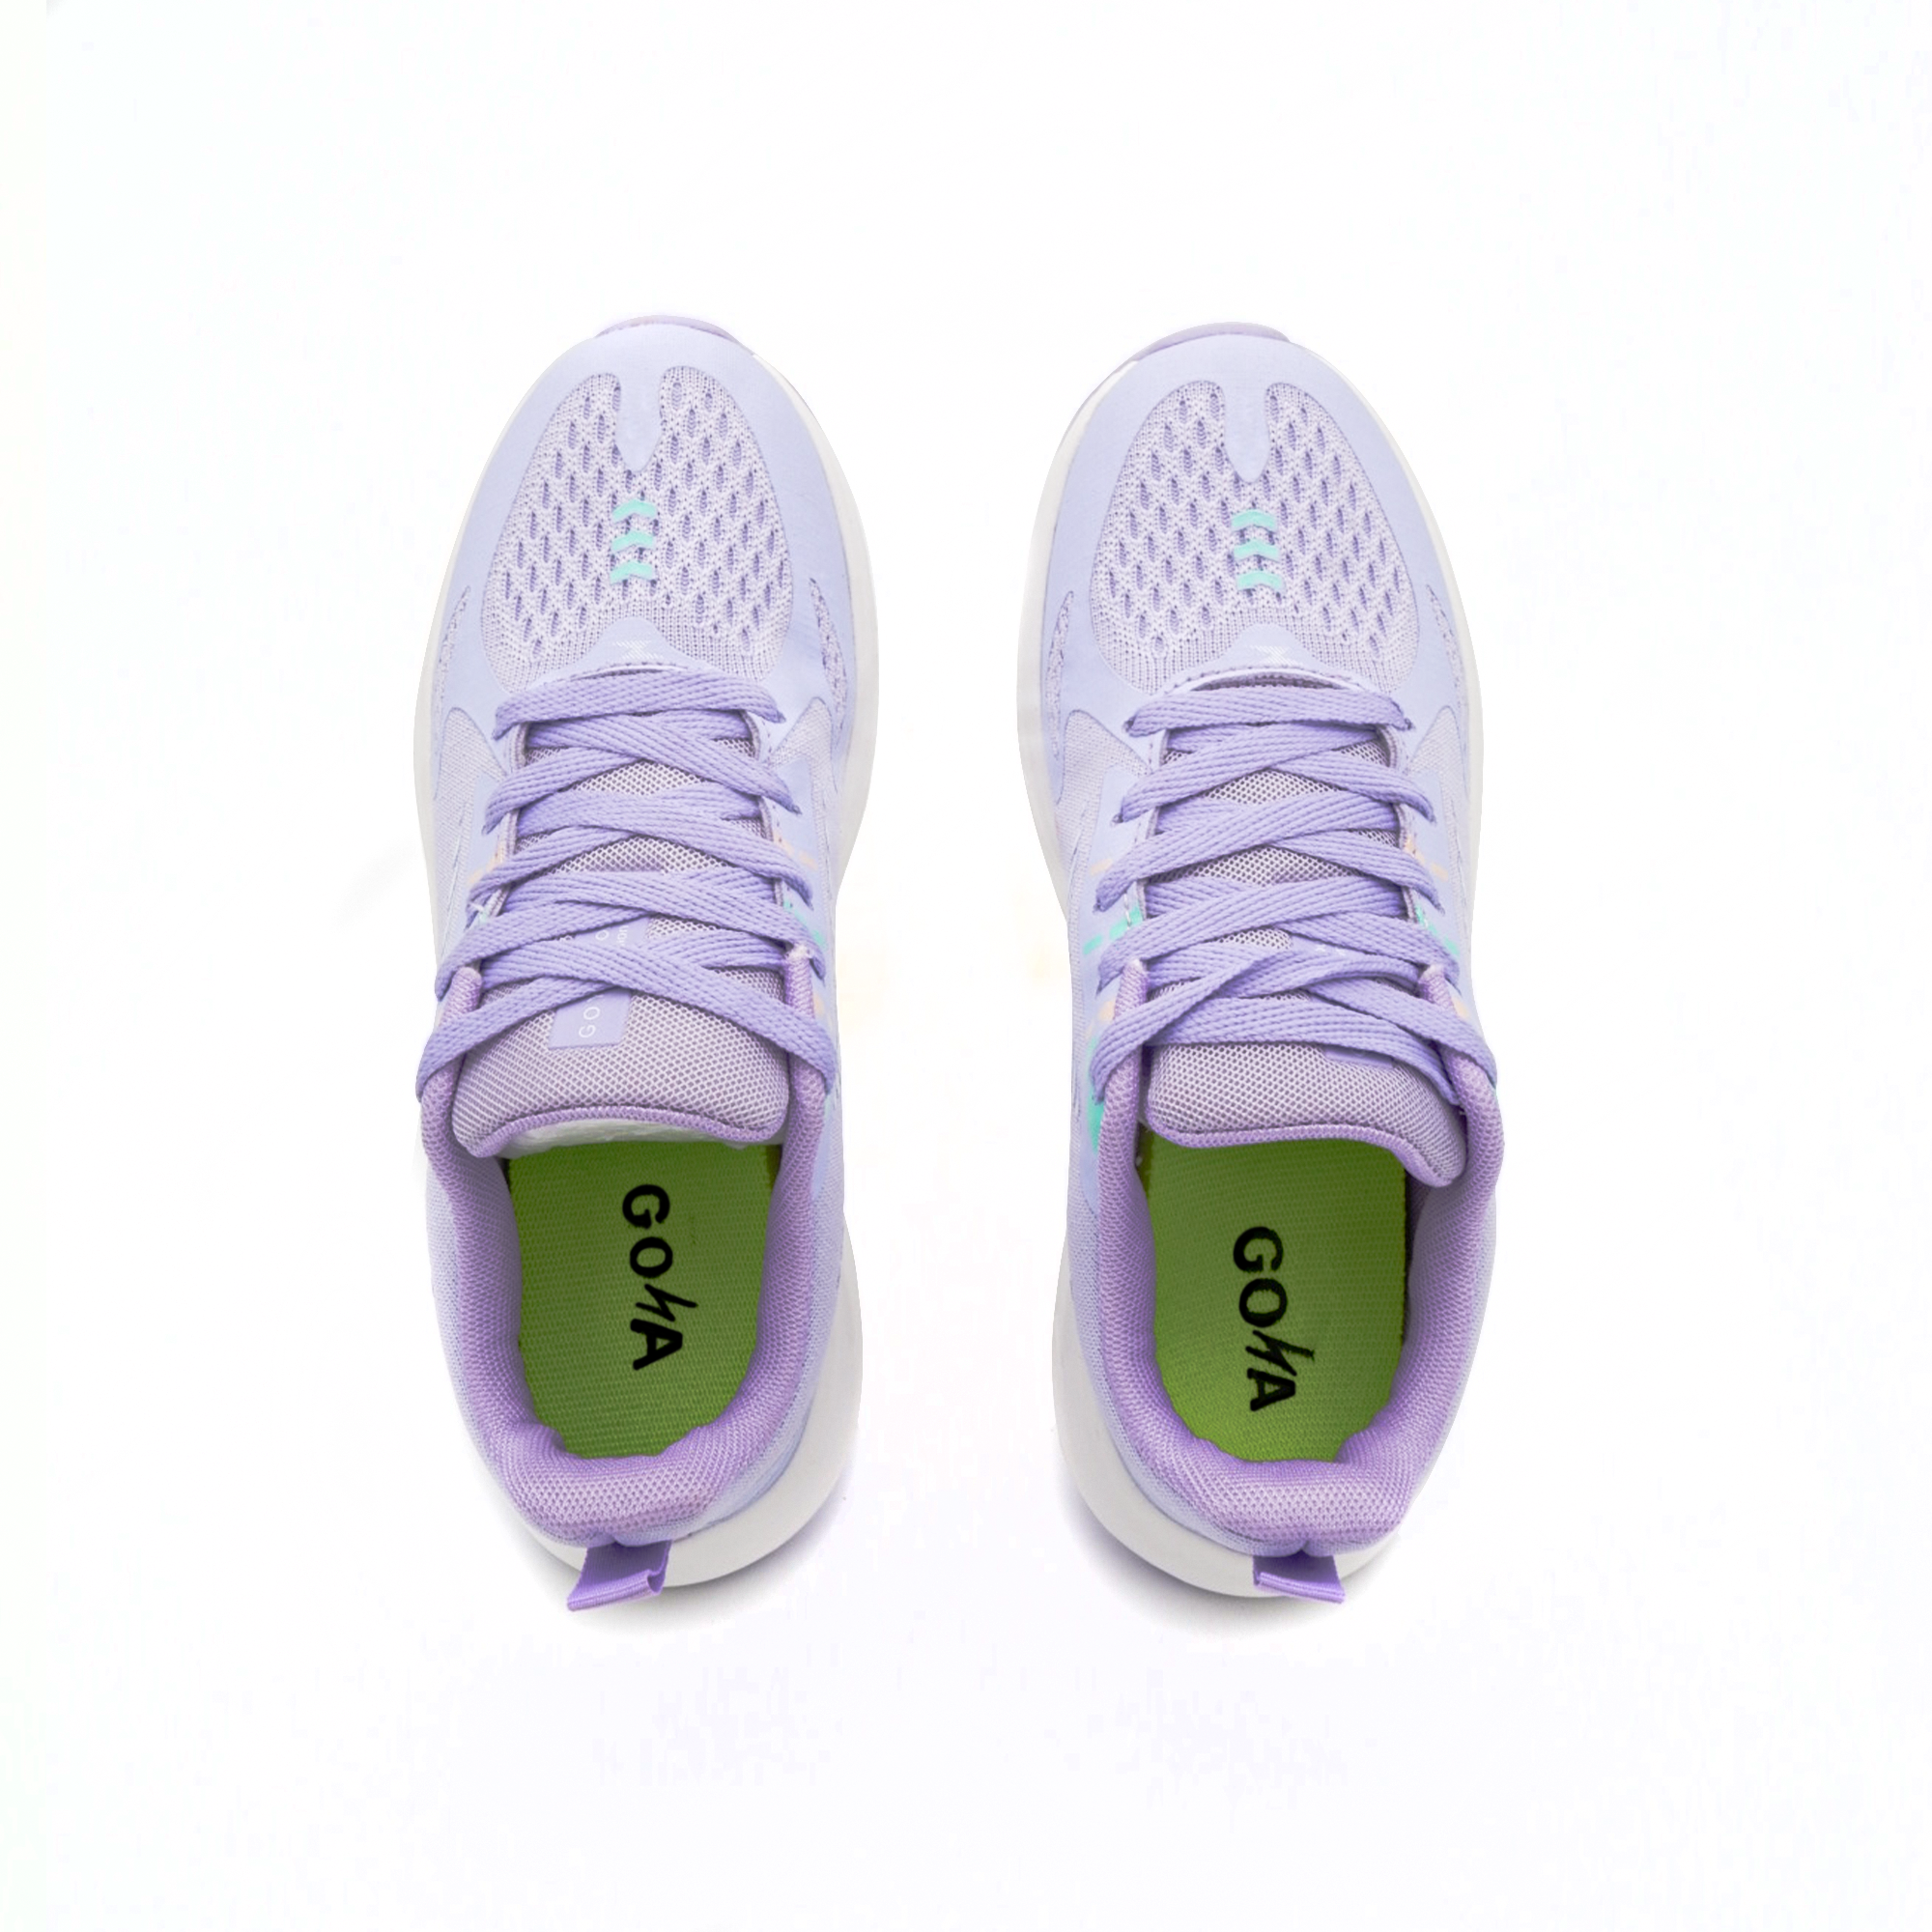  [HOT] Giày Thể Thao Sneaker chính hãng Goya GY233 Tím 